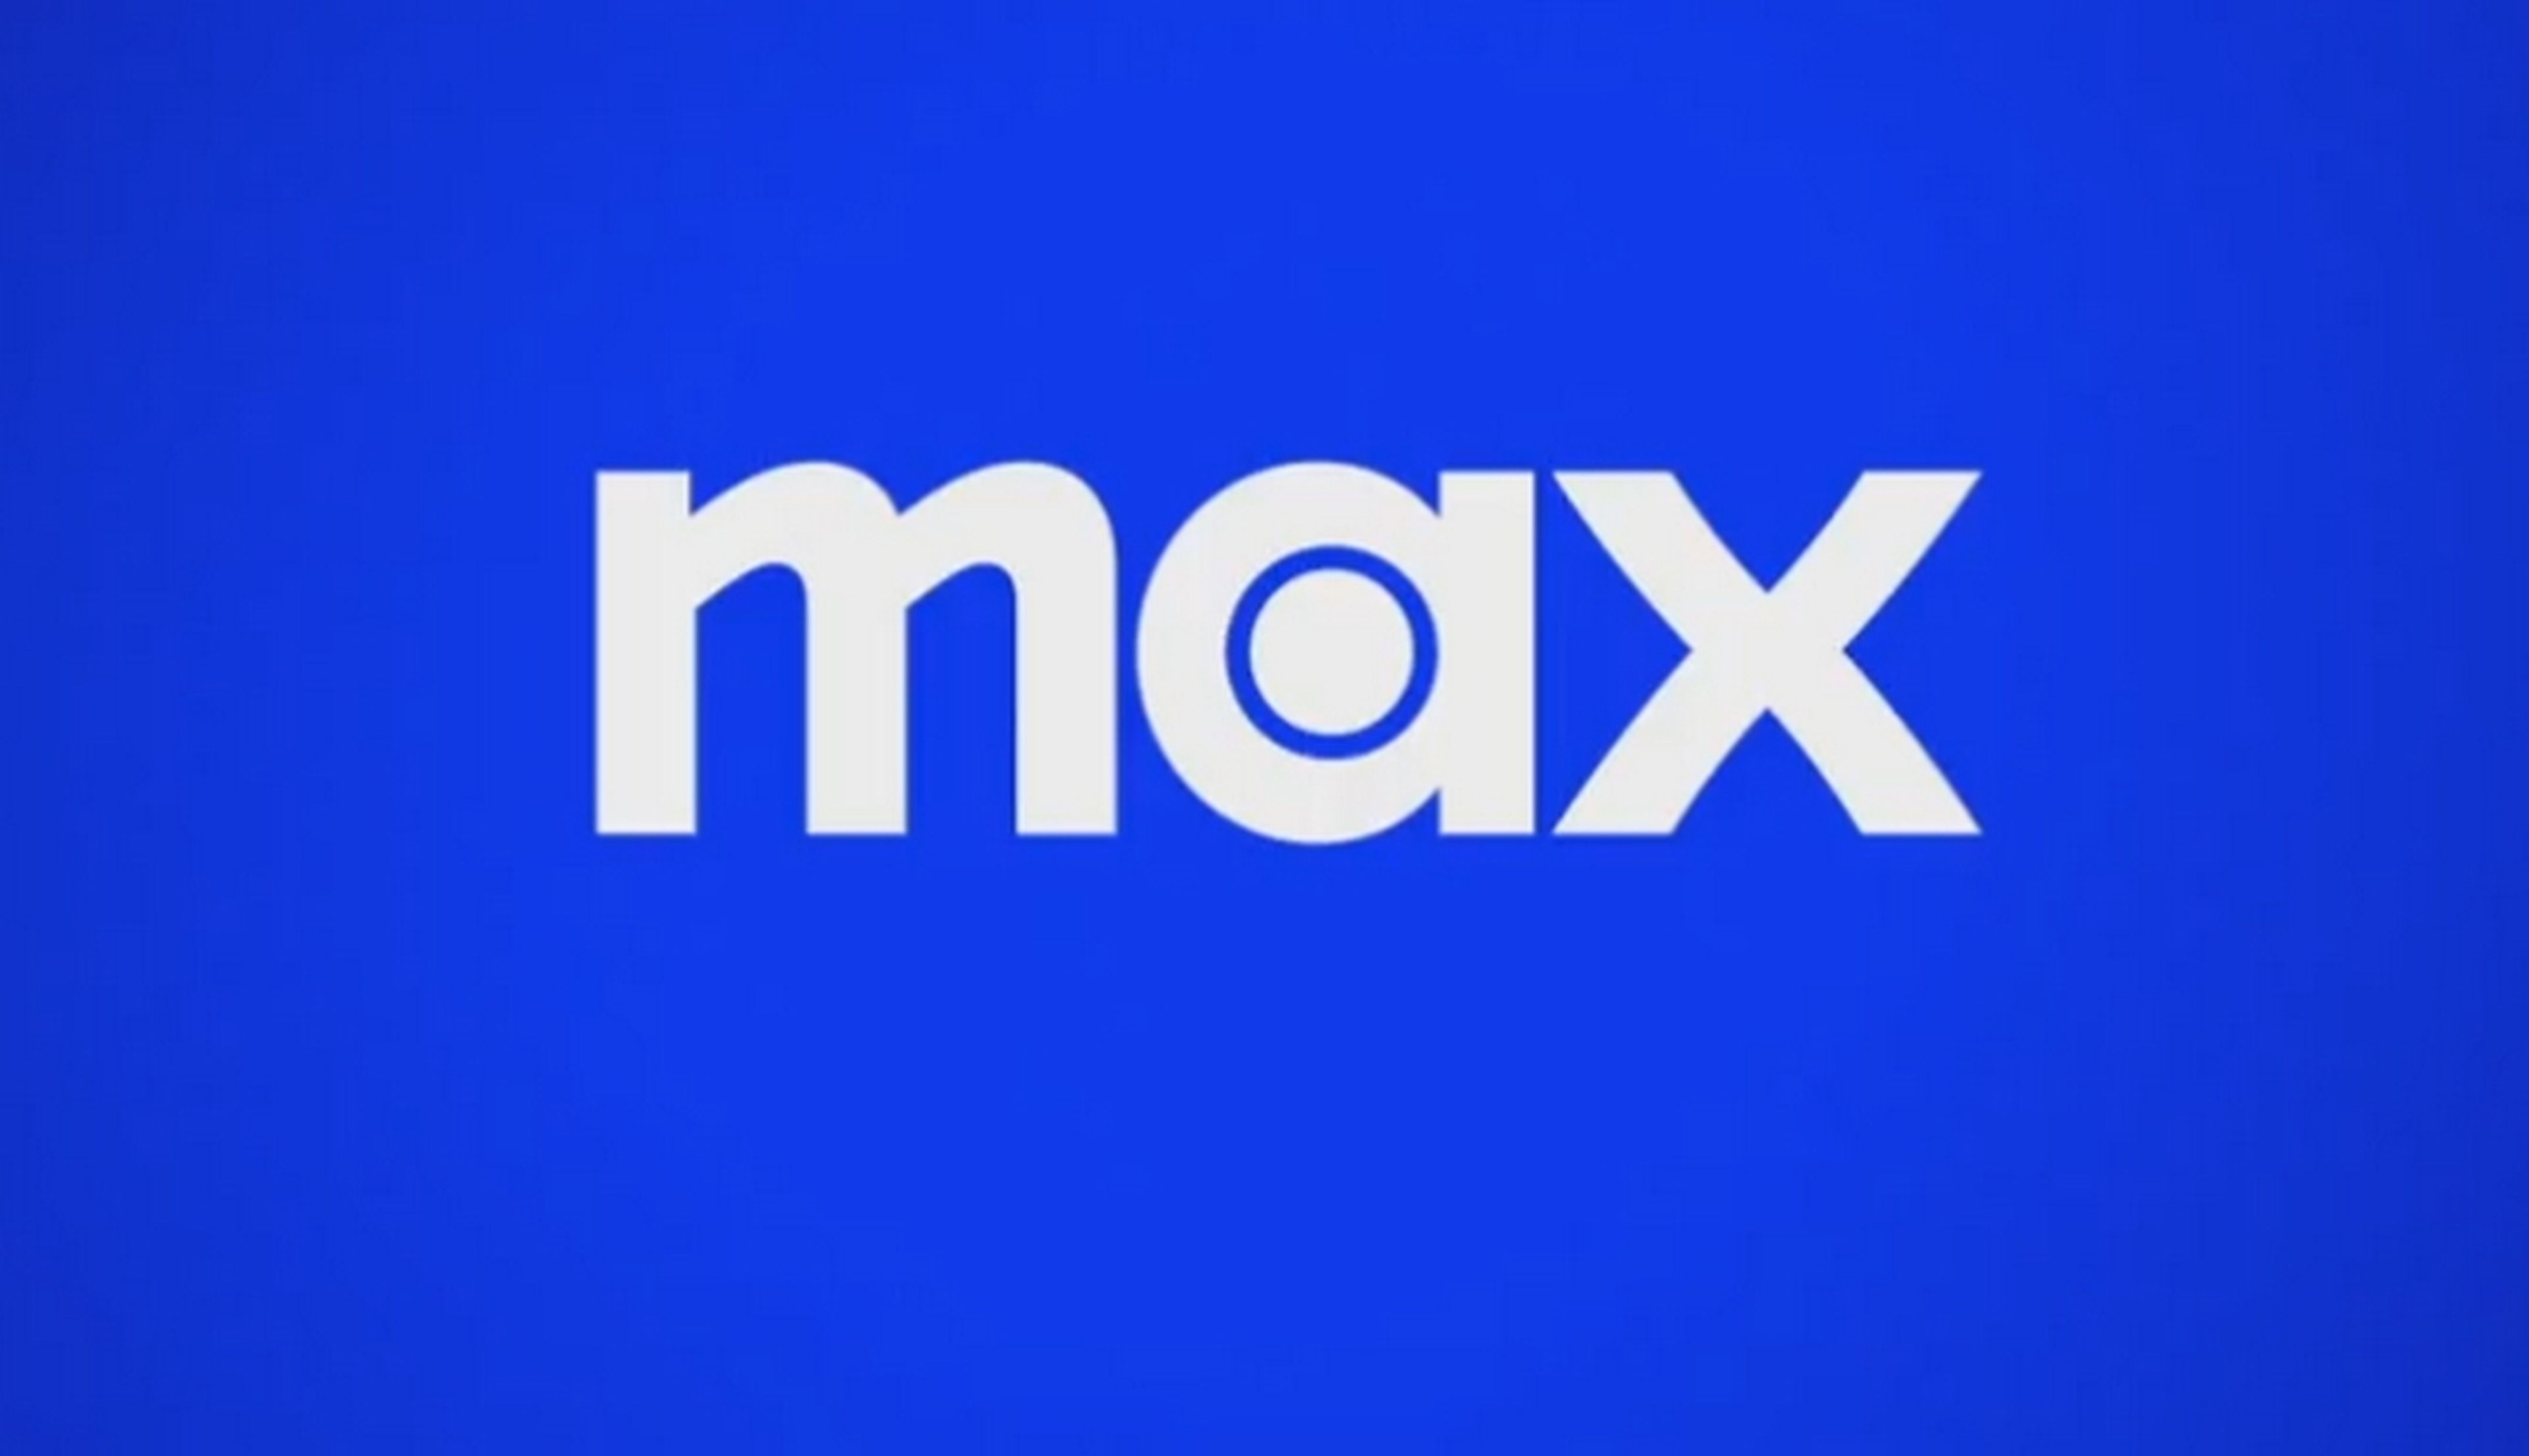 HBO Max se marca 'un Netflix' con su nuevo nombre Max: planes con publicidad y pagas más por el contenido 4K